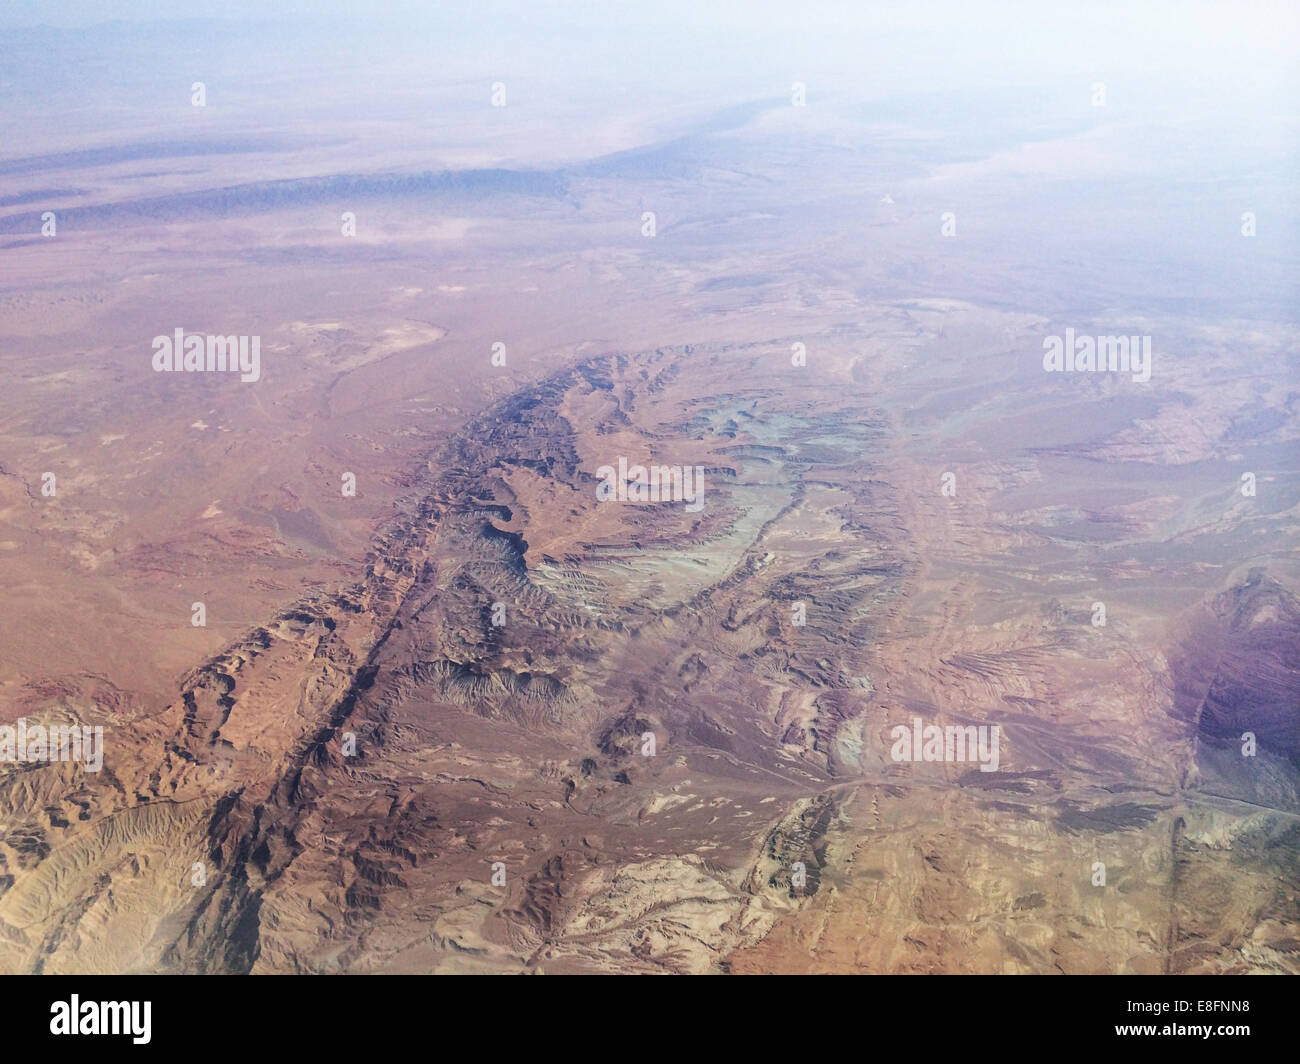 Iran, Kurdistan, Aerial view of Zagros mountains range Stock Photo